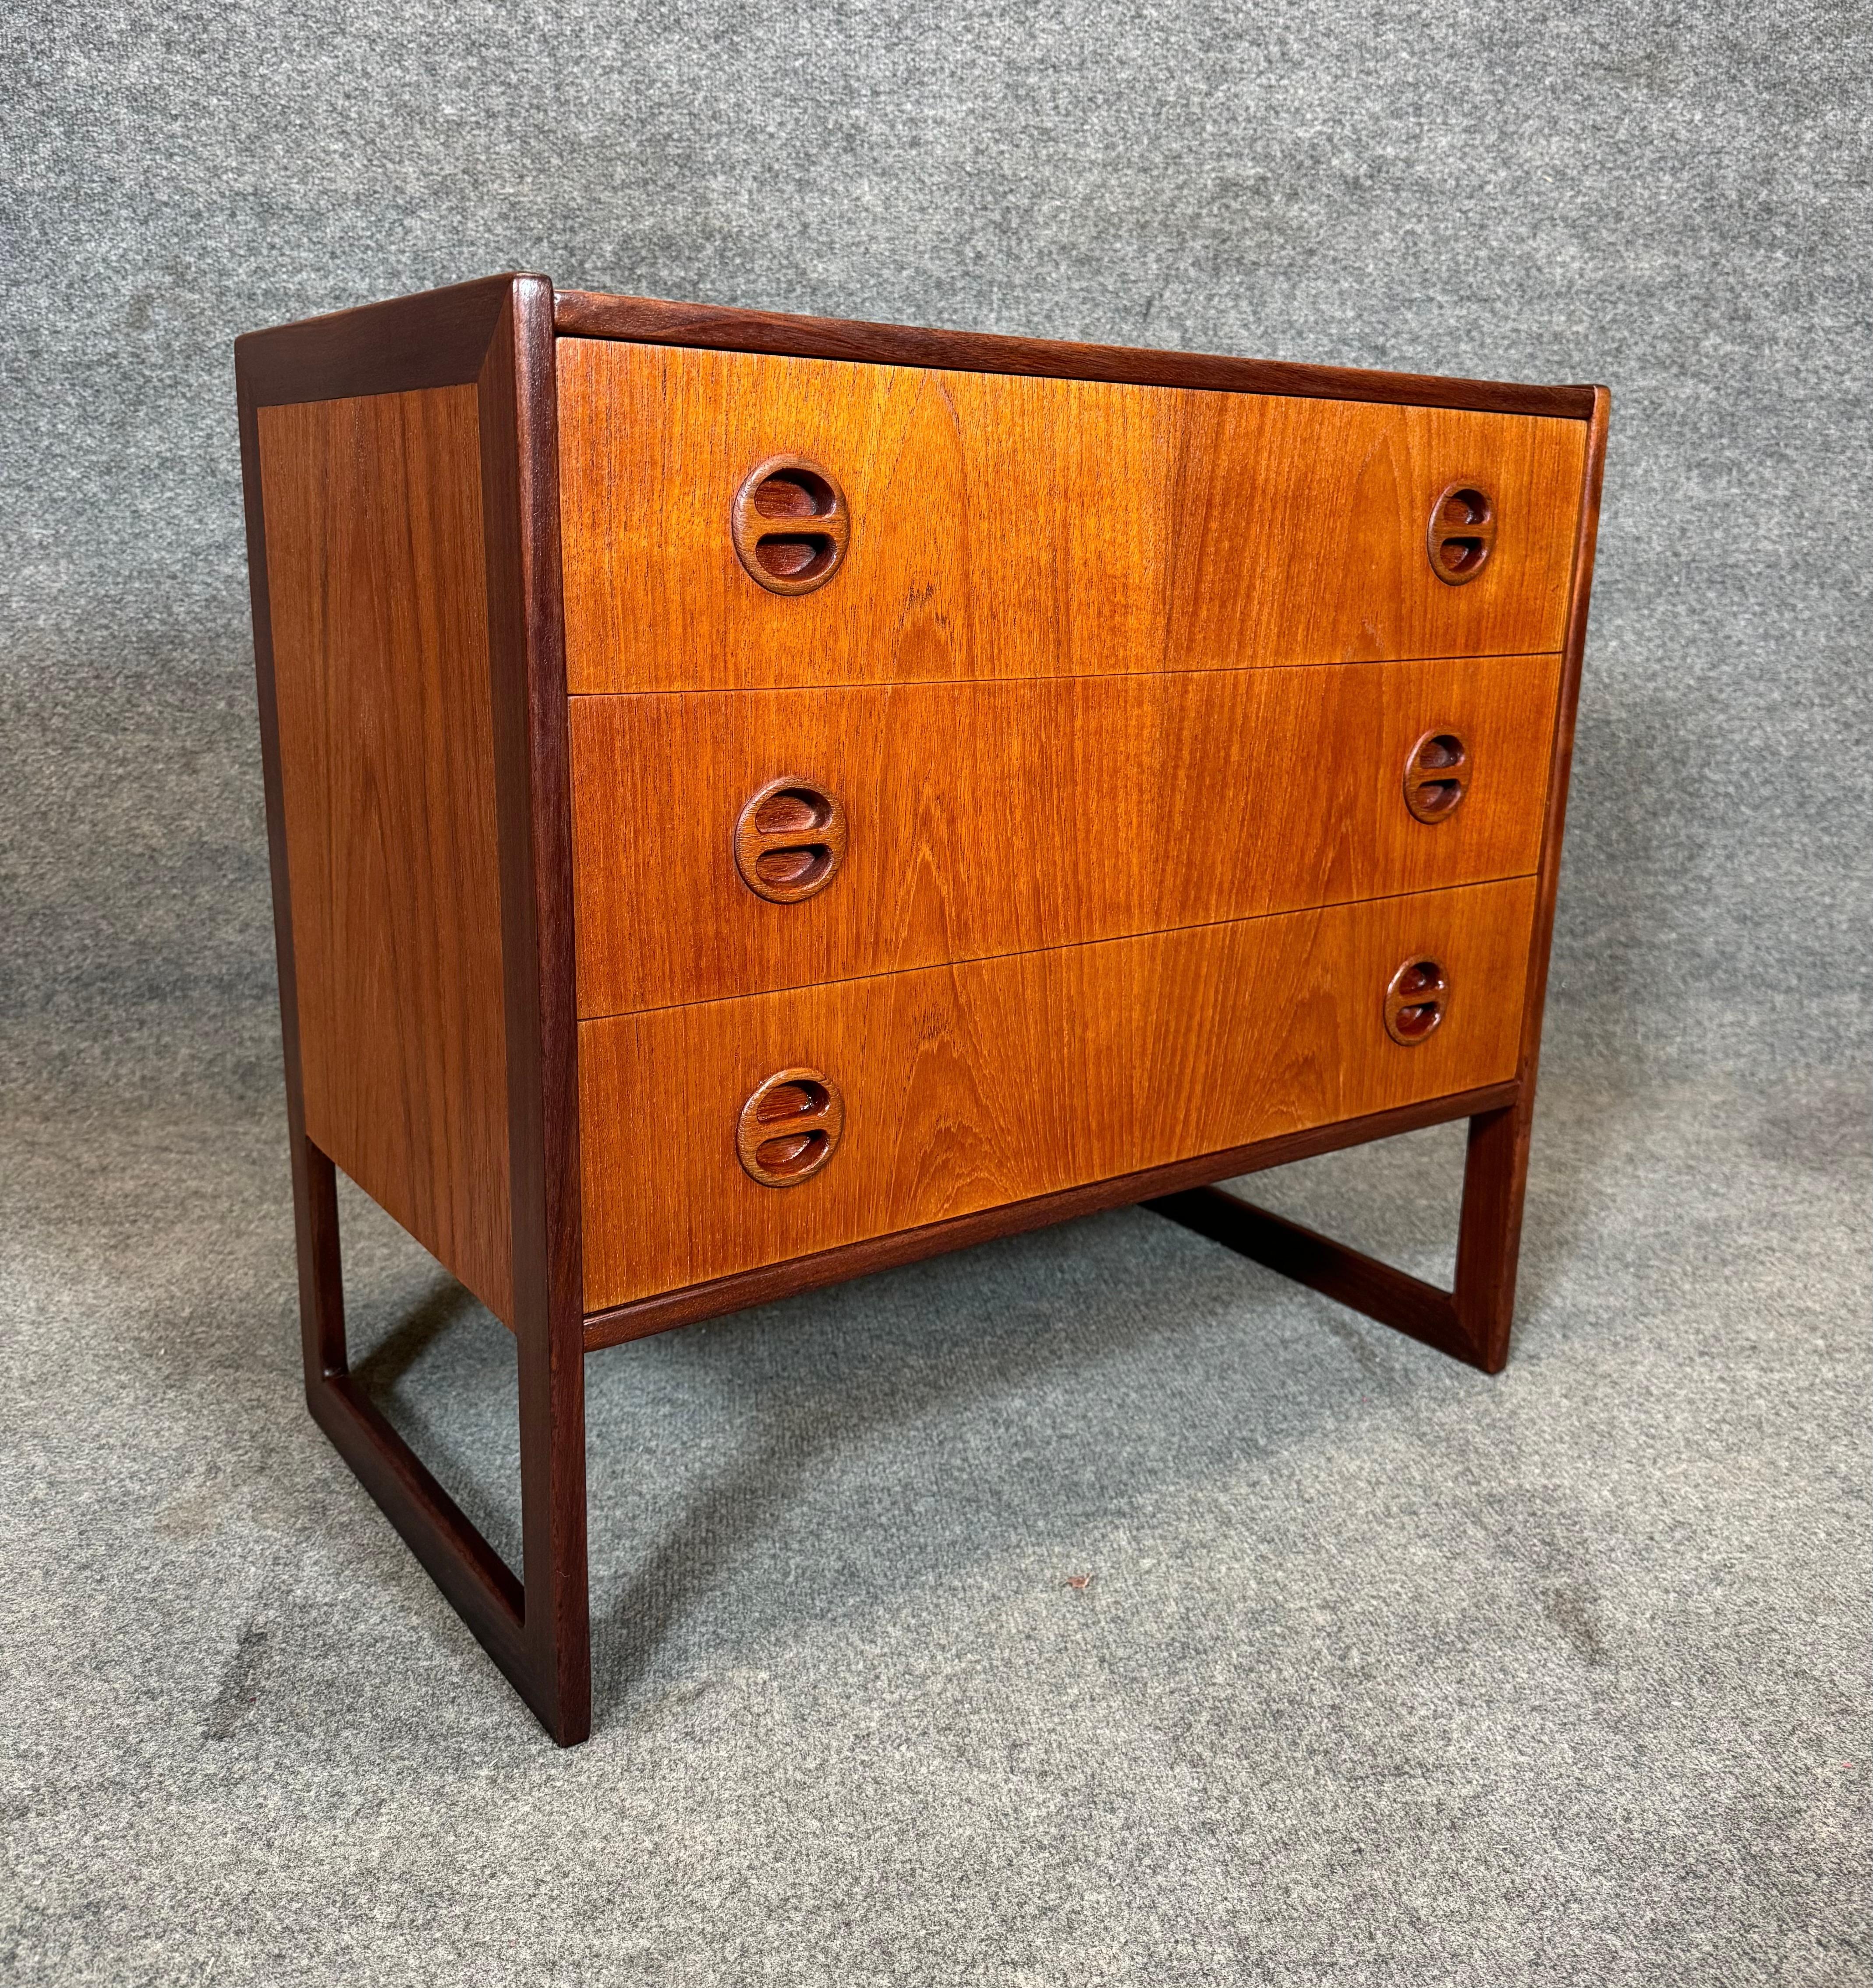 Woodwork Vintage Danish Mid Century Modern Teak LowBoy Dresser Chest by Arne Wahl Iversen